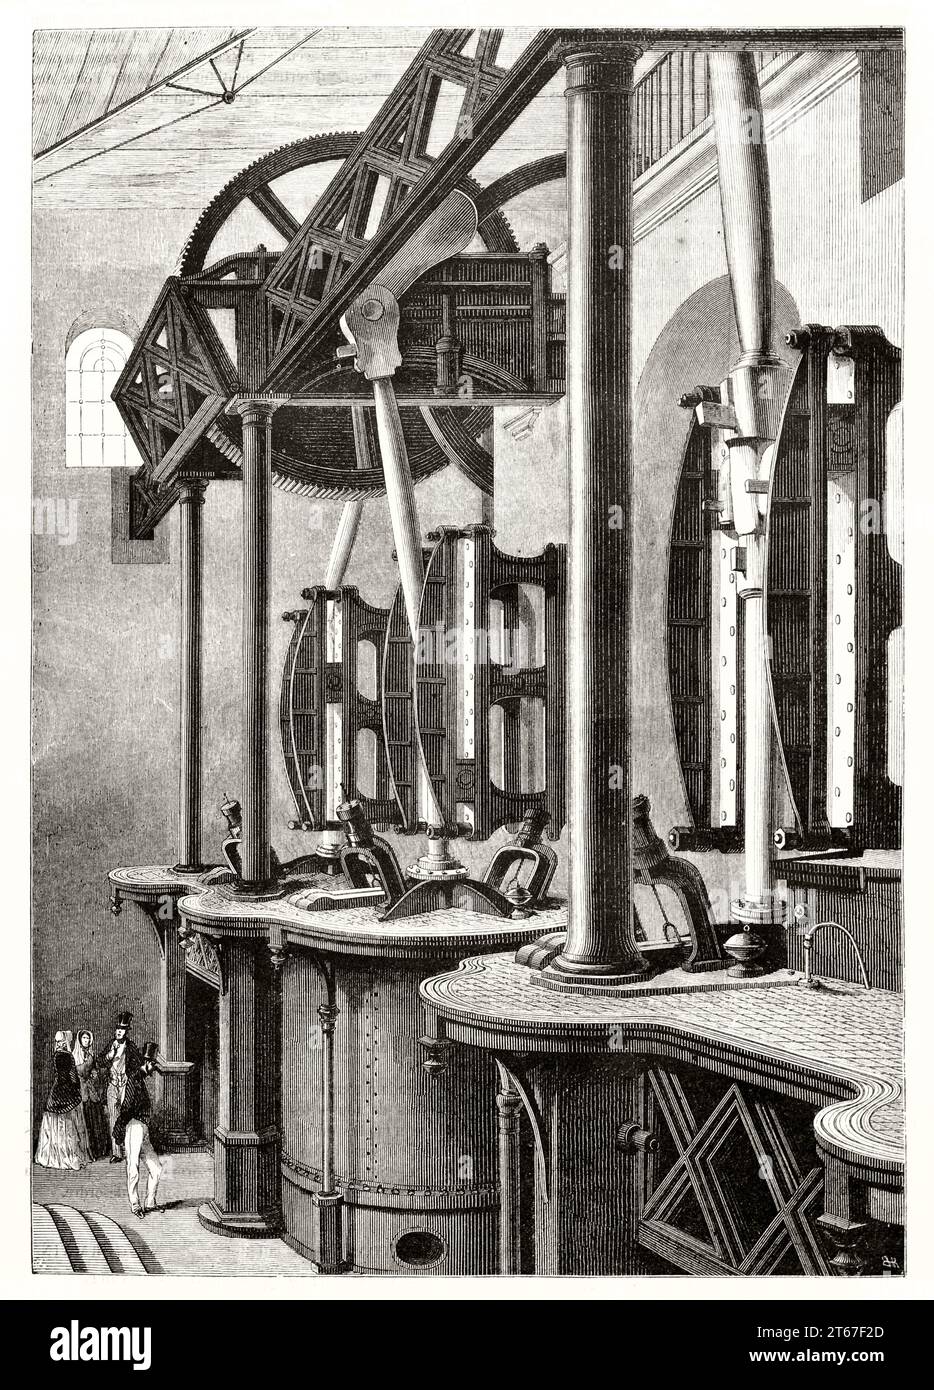 Illustration ancienne des pompes ferroviaires atmosphériques à Paris-Saint-Germain. ByBlanchard, publ. Sur magasin pittoresque, Paris, 1851 Banque D'Images